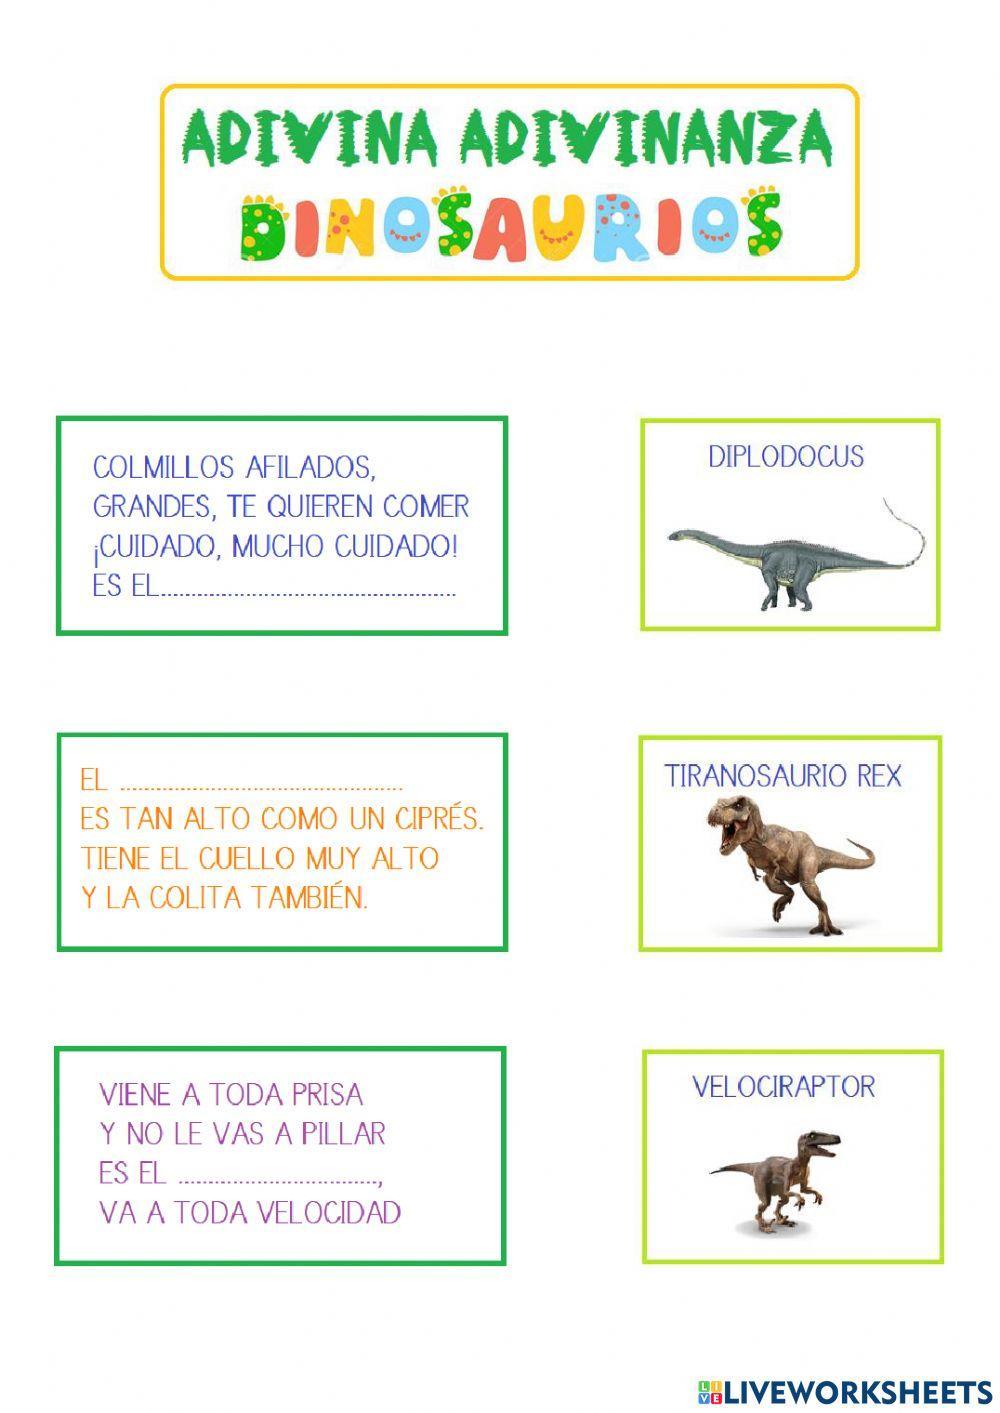 Adivinanzas de dinosaurios